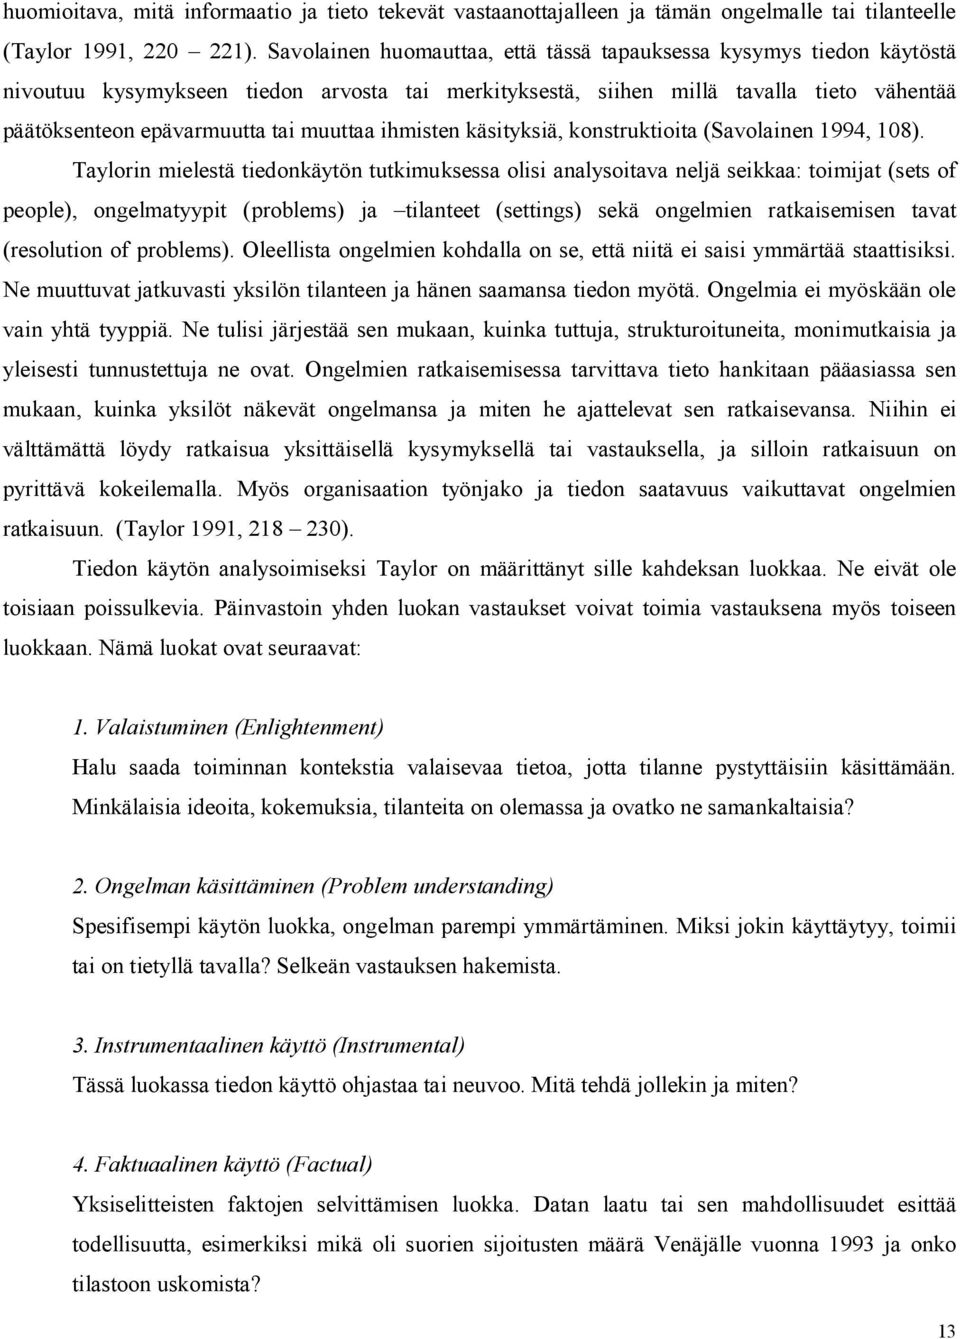 ihmisten käsityksiä, konstruktioita (Savolainen 1994, 108).